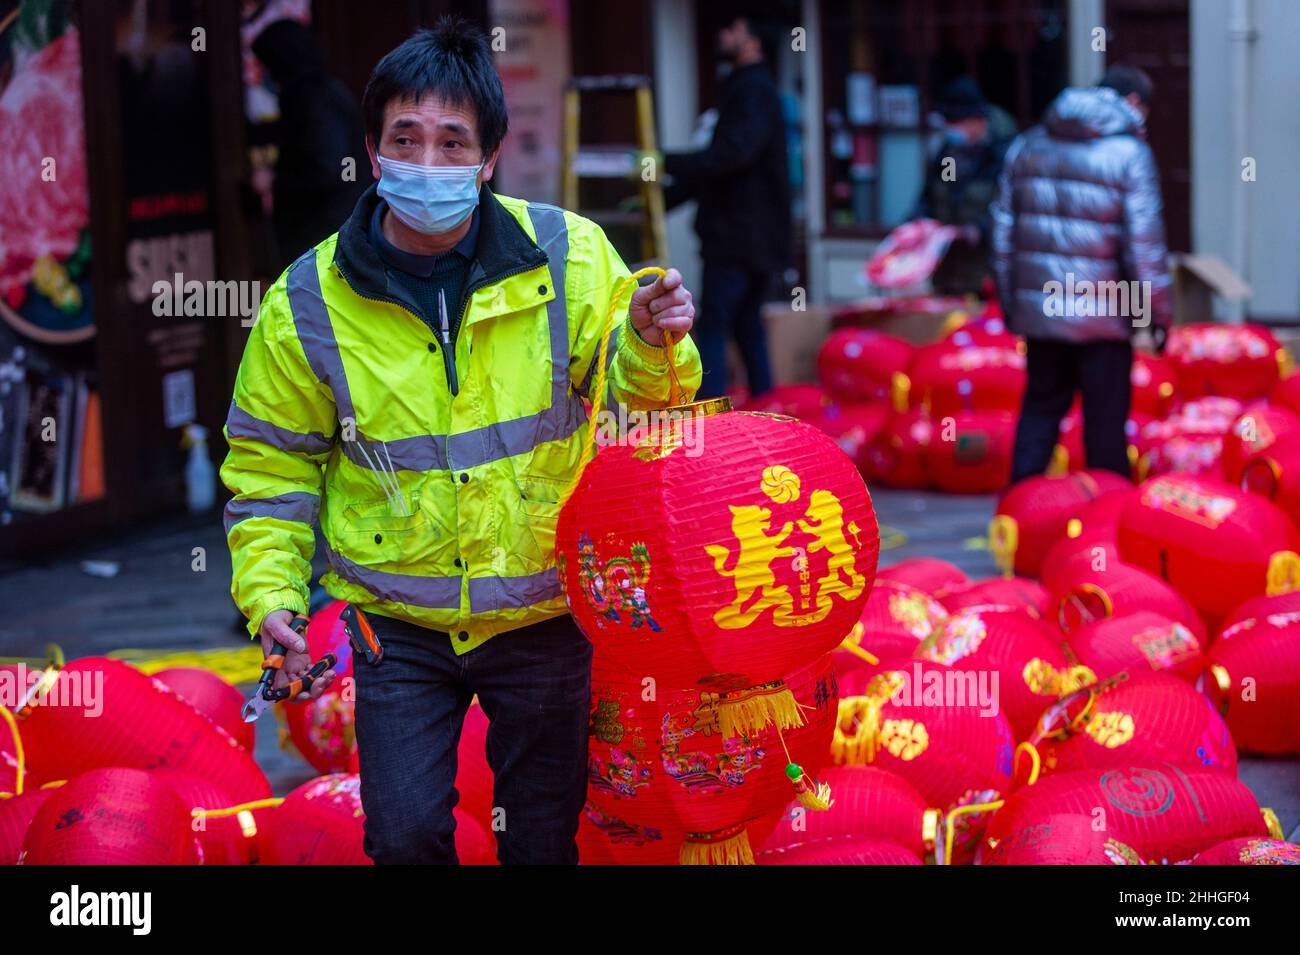 Londres, Royaume-Uni.24 janvier 2022.Un ouvrier porte une lanterne assemblée à Chinatown avant le nouvel an chinois et l'année du tigre commence officiellement le 1 février.Les festivités sur Chinatown sont réduites cette année à la pandémie.Credit: Stephen Chung / Alamy Live News Banque D'Images